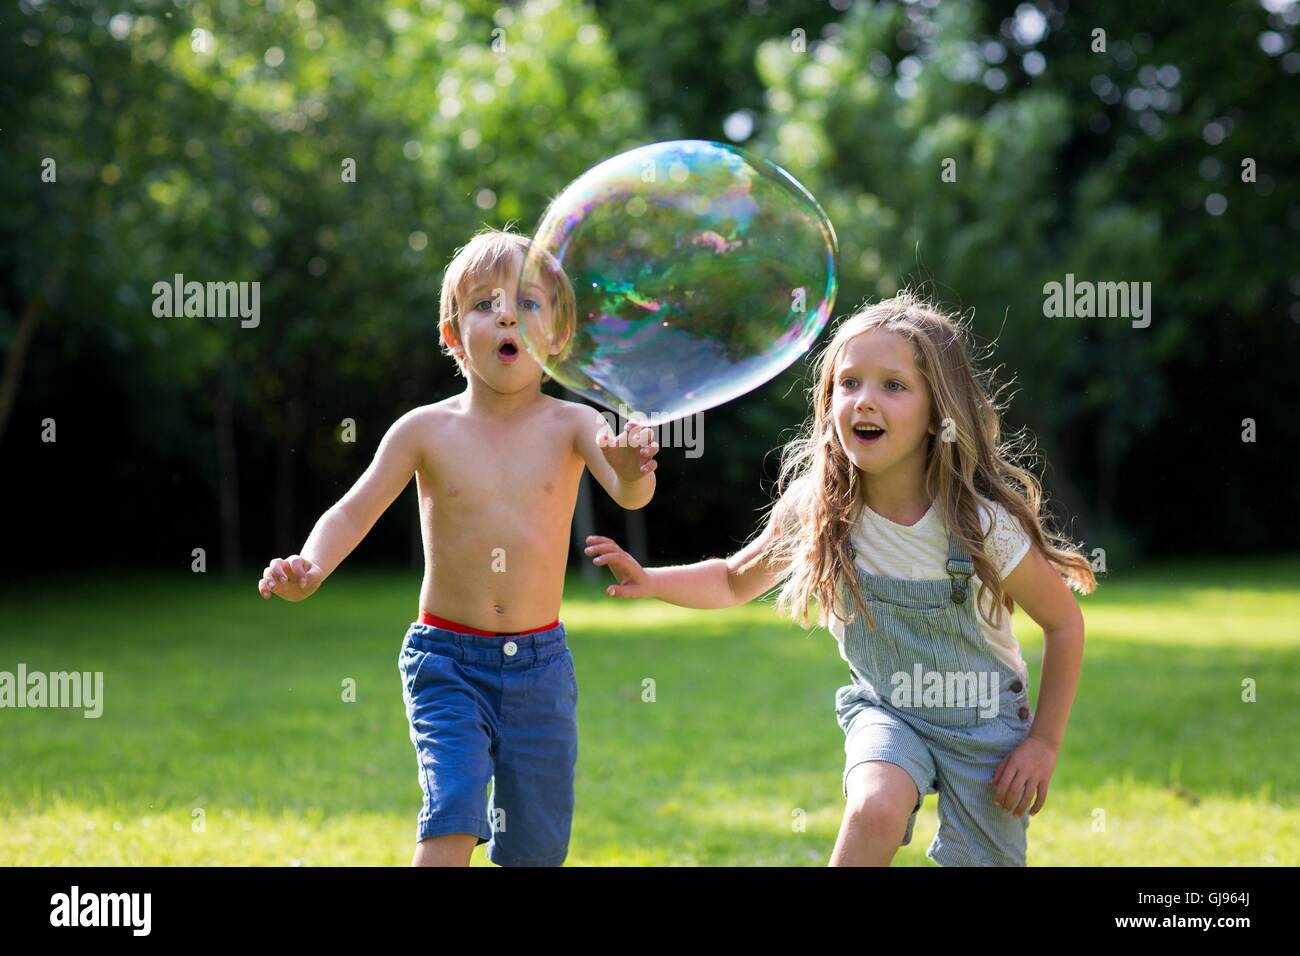 Proprietà rilasciato. Modello rilasciato. Fratello e Sorella a caccia di bolle nel giardino. Foto Stock